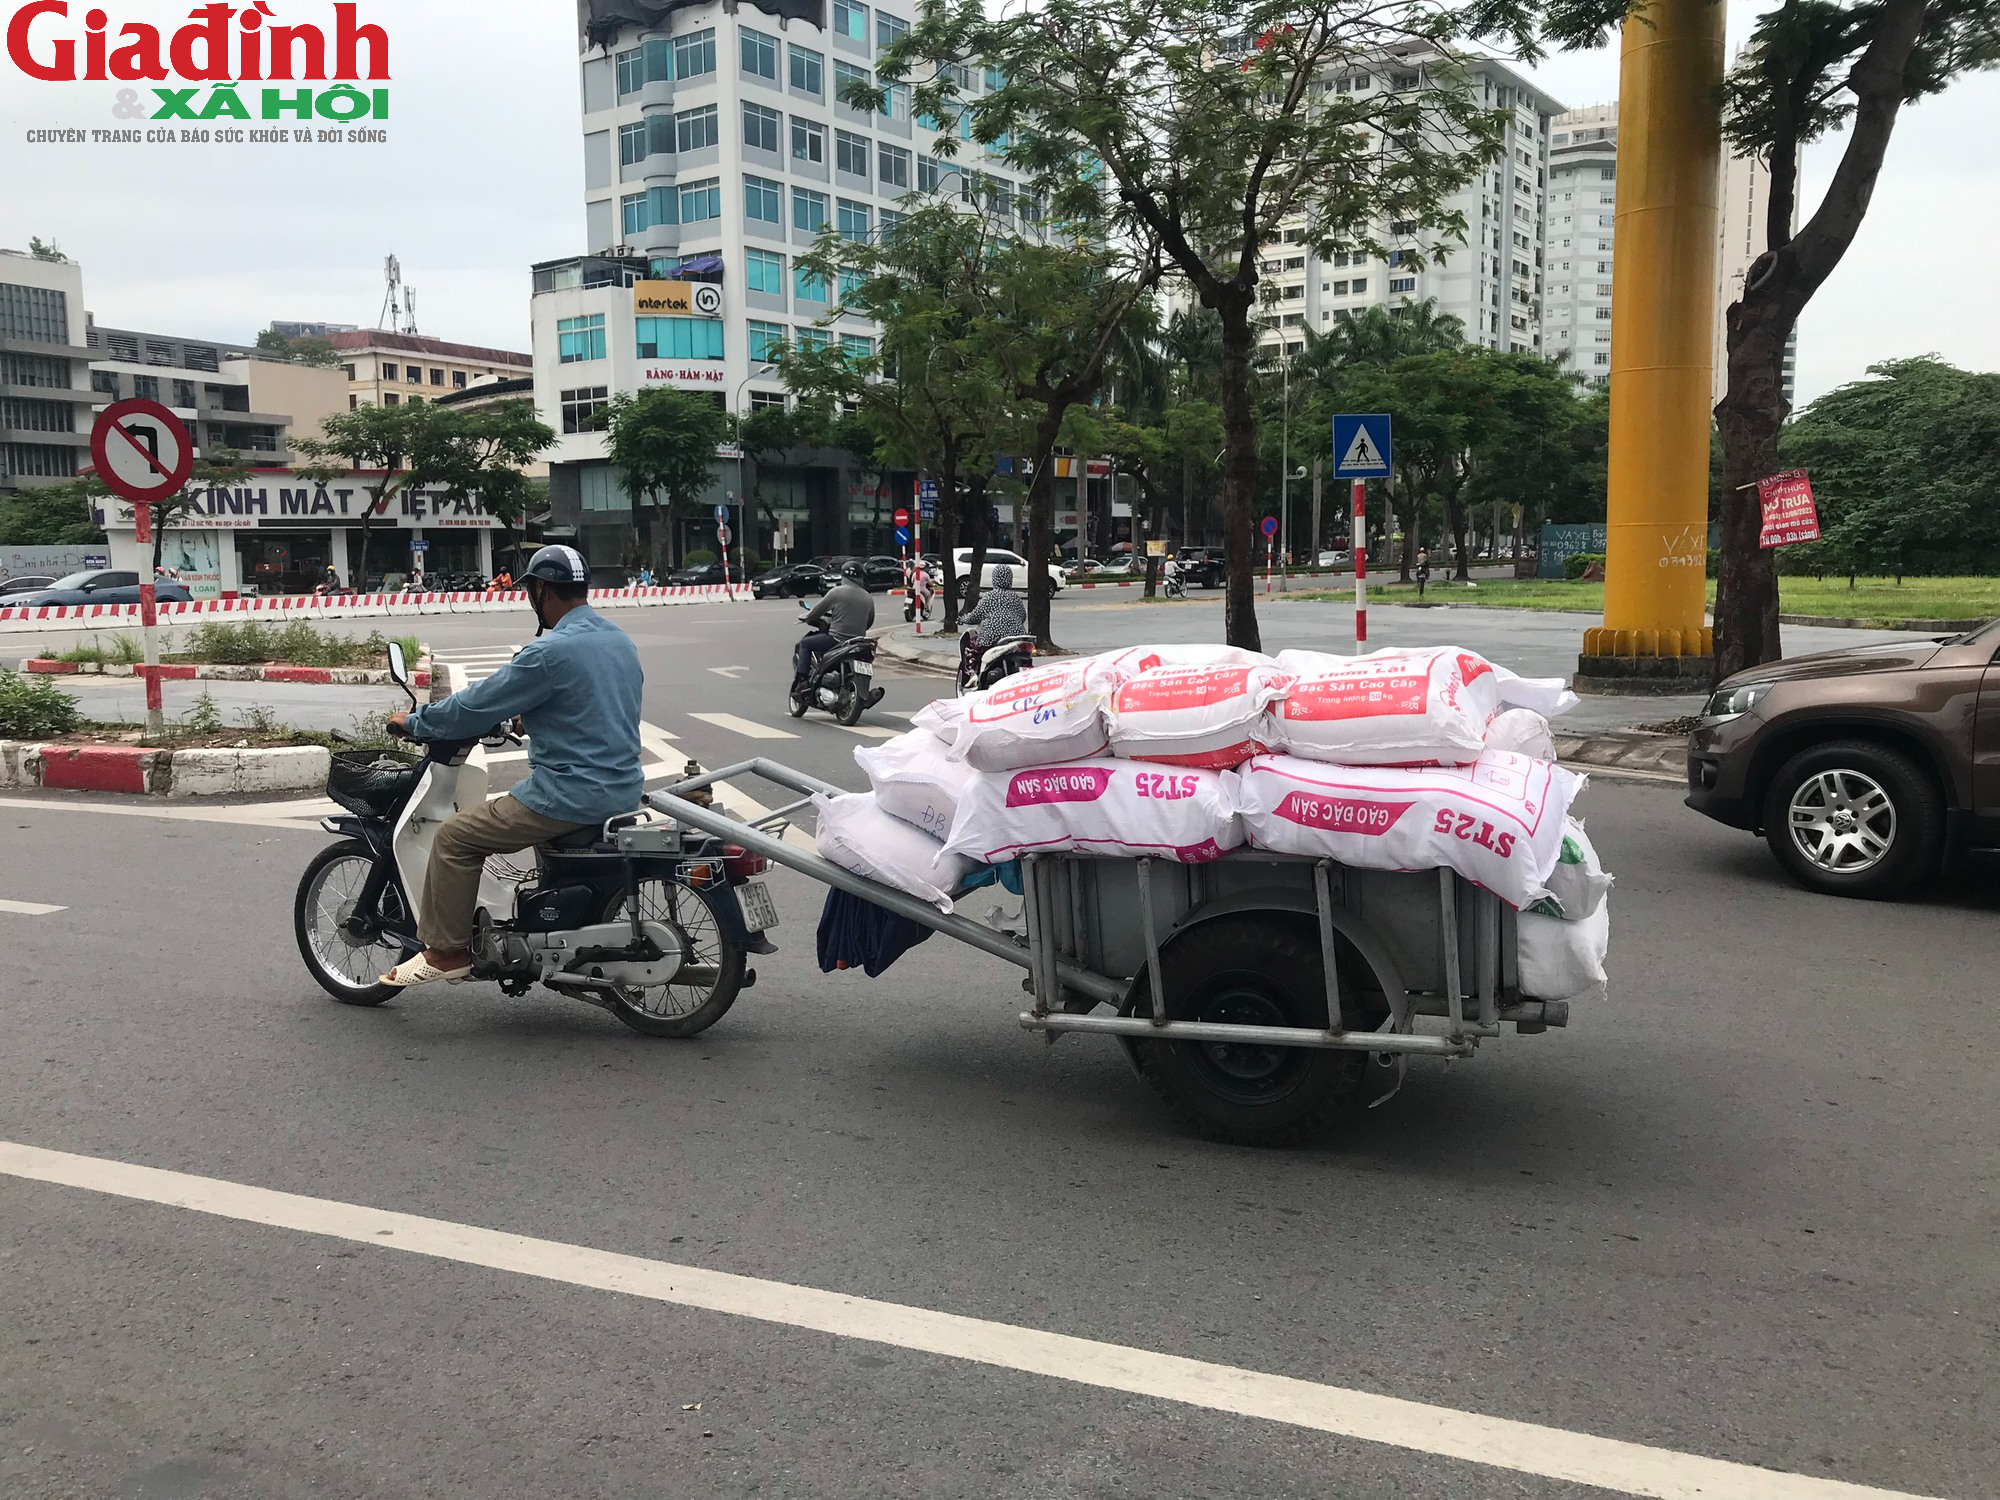 Ám ảnh với xe tự chế lưu thông trên đường phố Hà Nội - Ảnh 4.